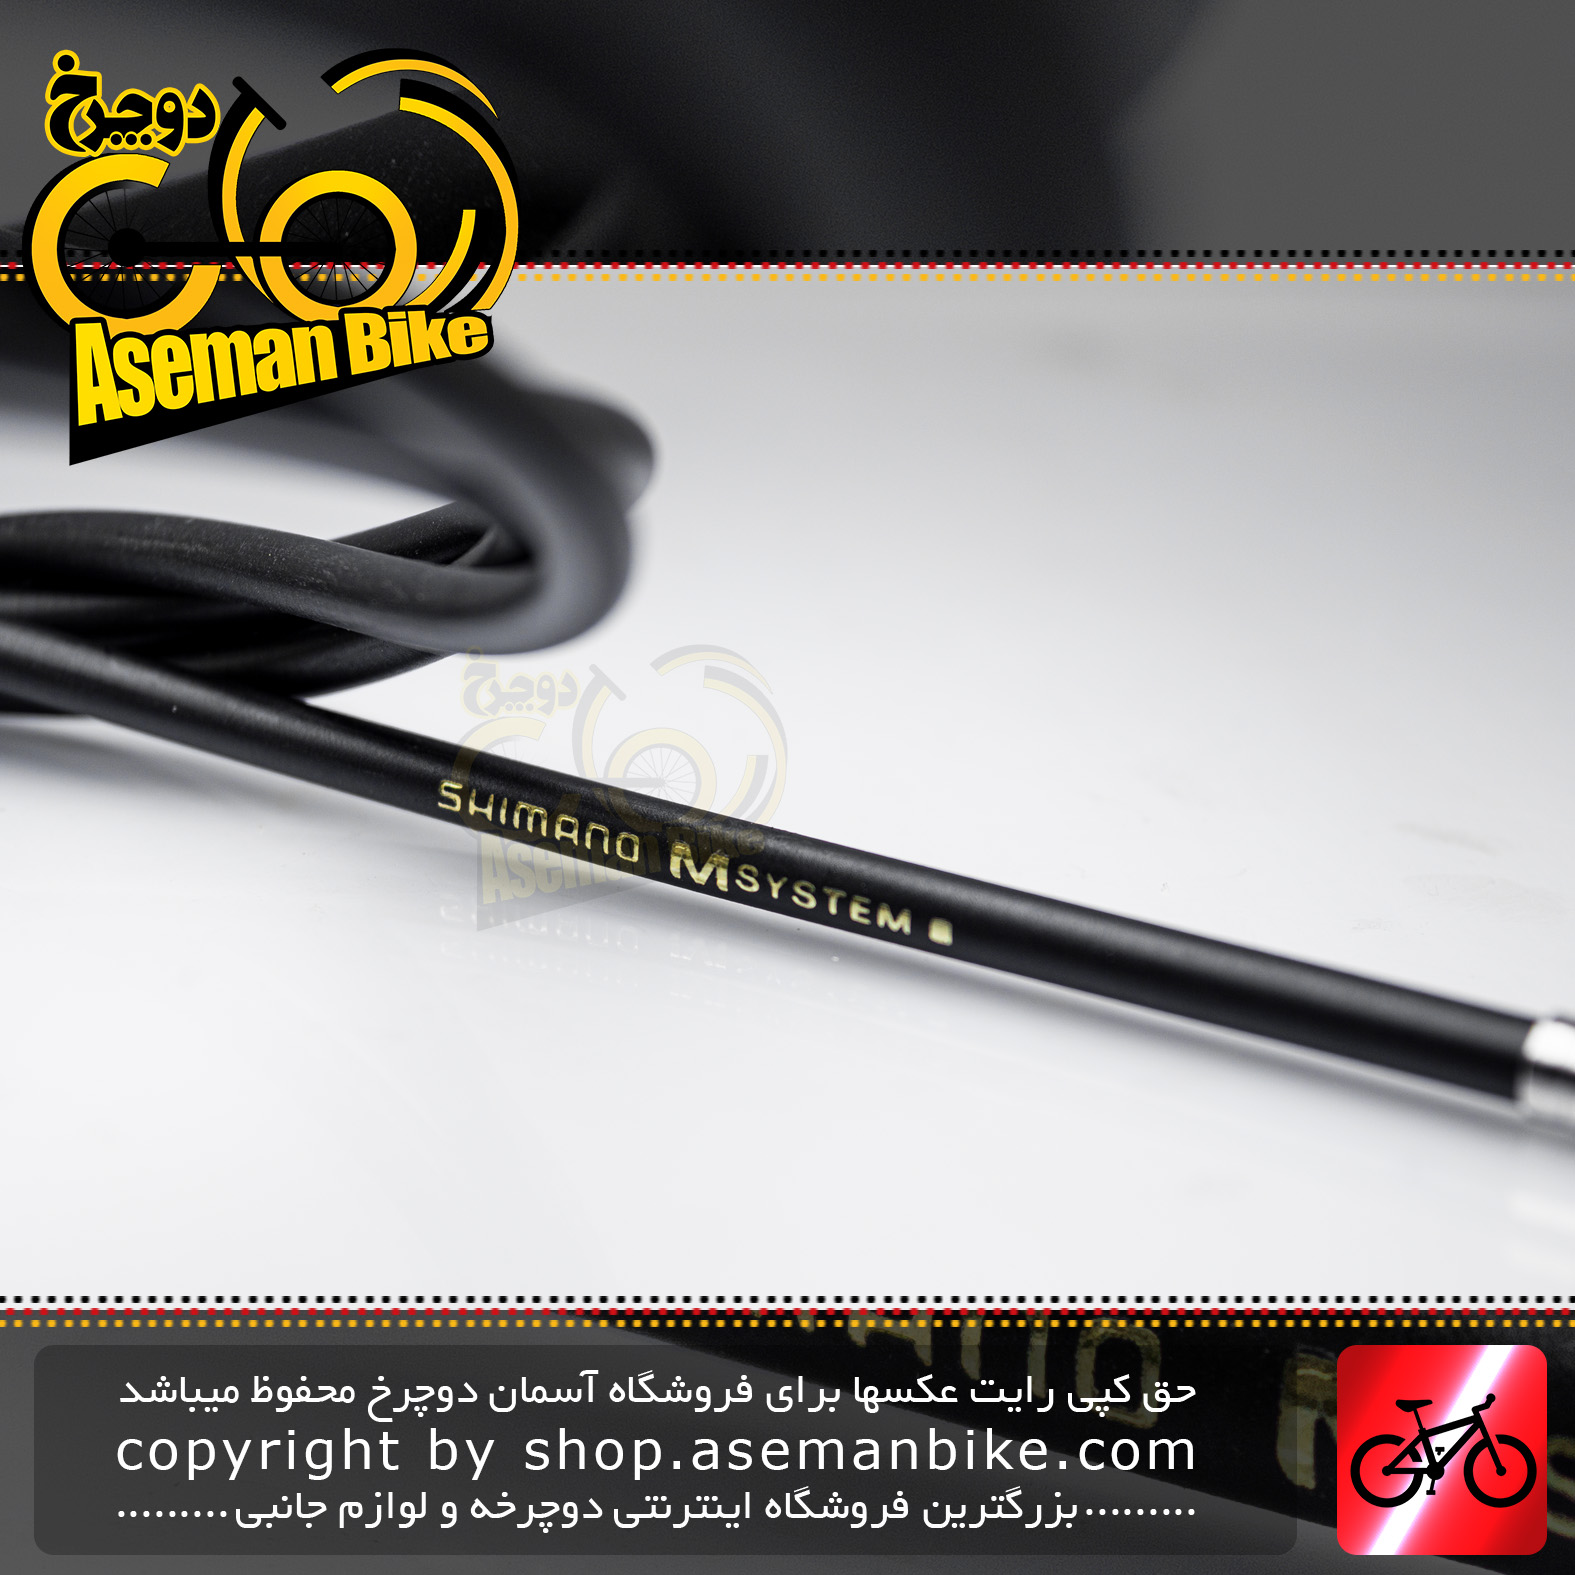 روکش سیم دنده دوچرخه شیمانو سری ام سیستم مشکی کد 1113 Shimano Bicycle Housing M-System Black